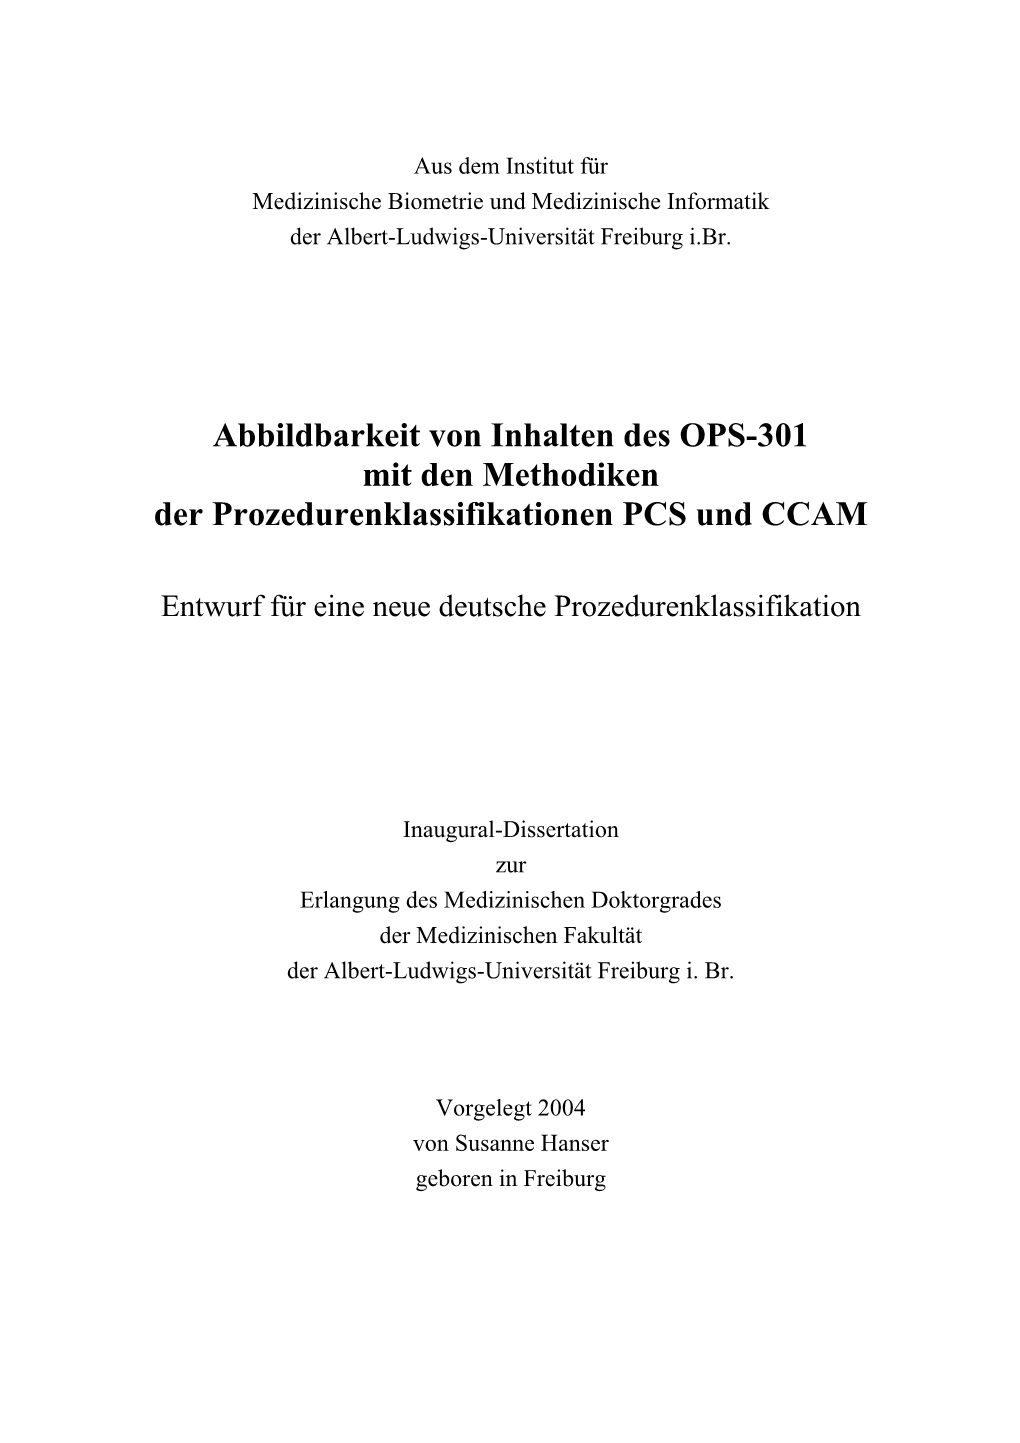 Abbildbarkeit Von Inhalten Des OPS-301 Mit Den Methodiken Der Prozedurenklassifikationen PCS Und CCAM